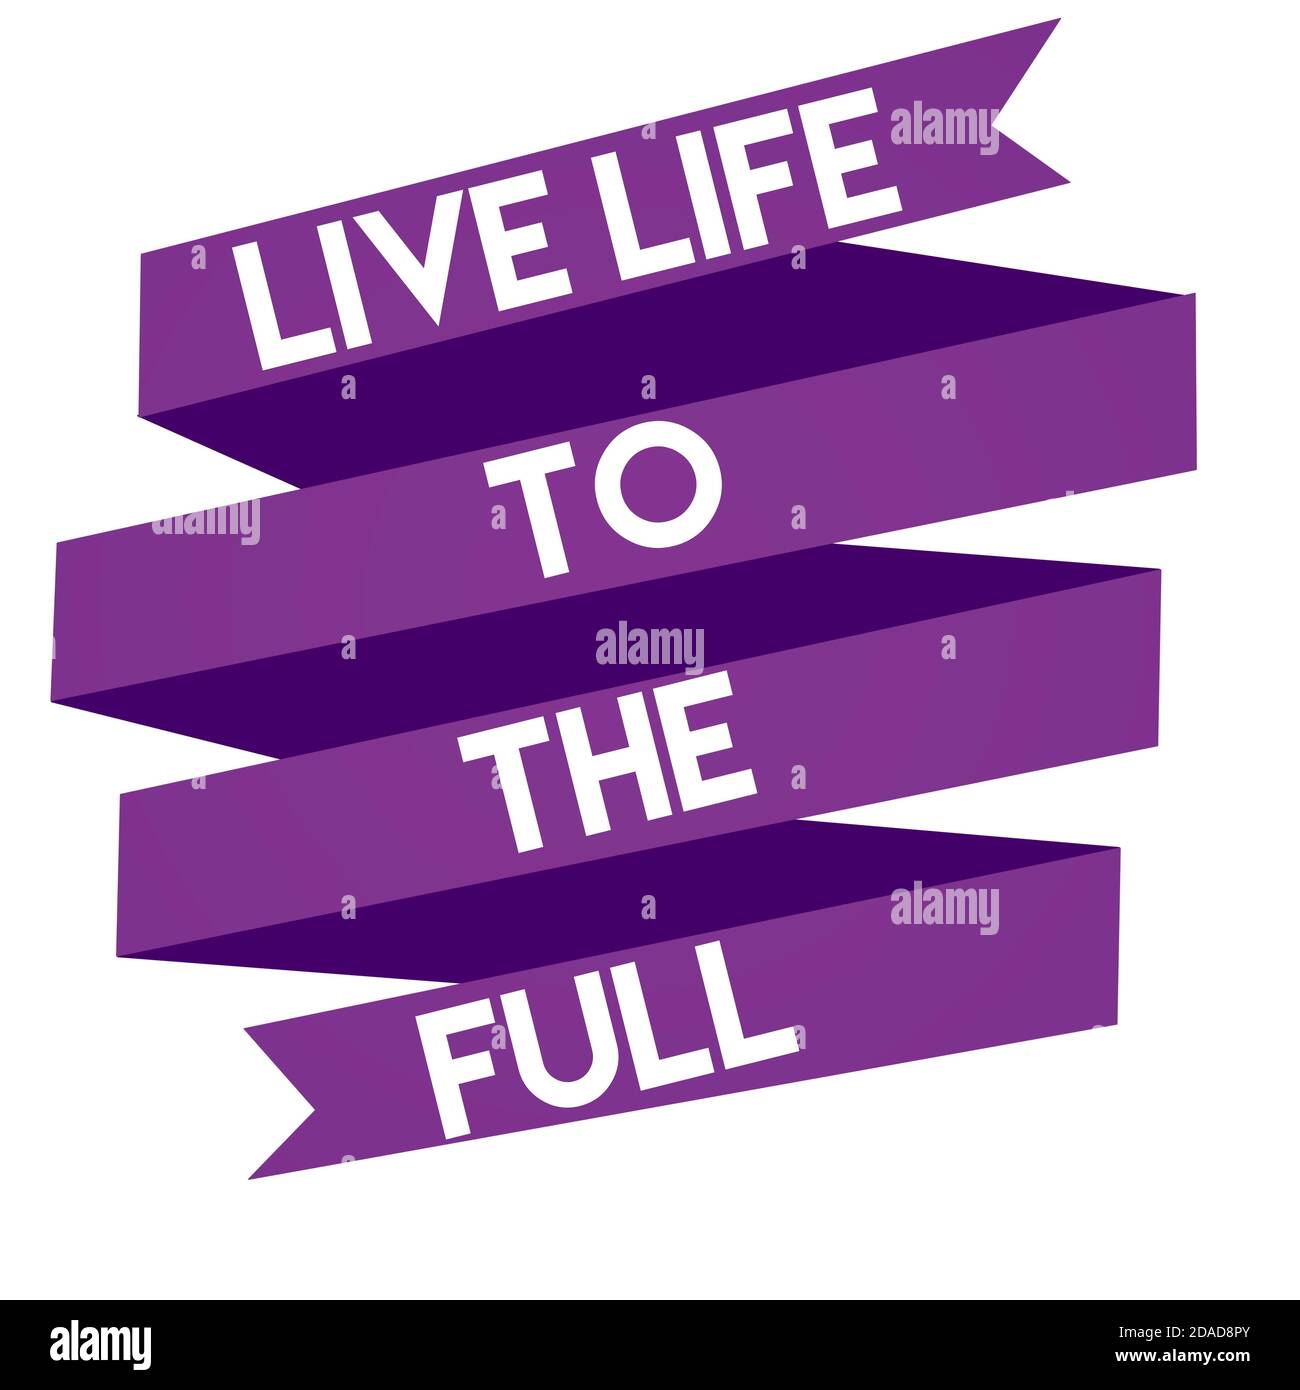 Sống đầy đủ (Live life to the full): Cuộc sống còn nhiều điều đáng để khám phá và trải nghiệm. Hãy sống đầy đủ để trân trọng những khoảnh khắc trong cuộc sống. Hình ảnh liên quan đến chủ đề \